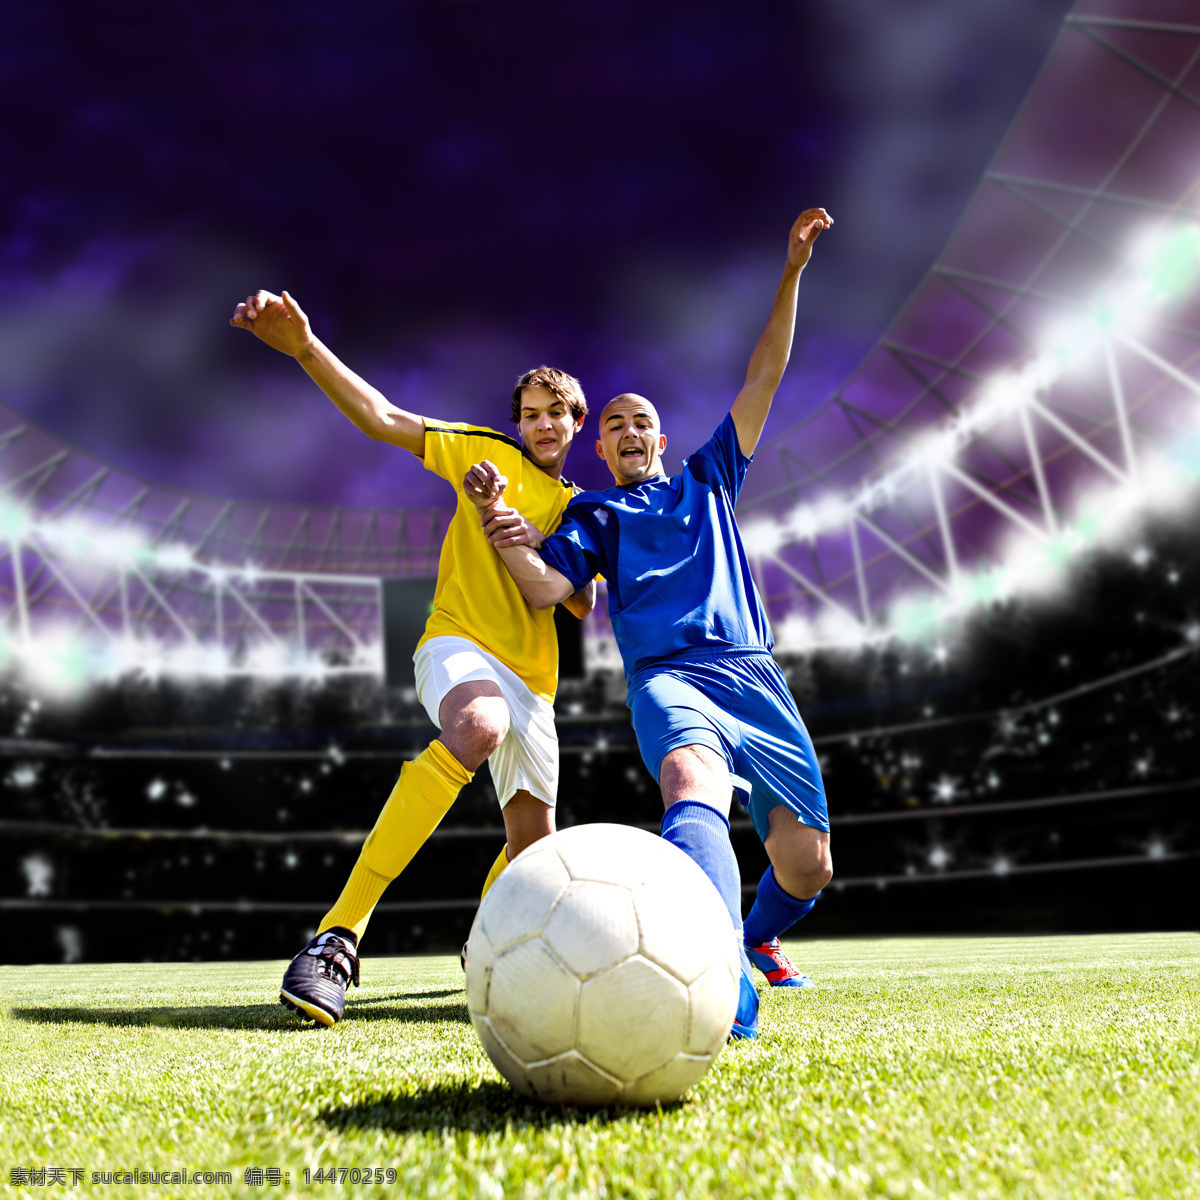 足球比赛 运动员 足球运动 体育运动员 体育运动 体育项目 生活百科